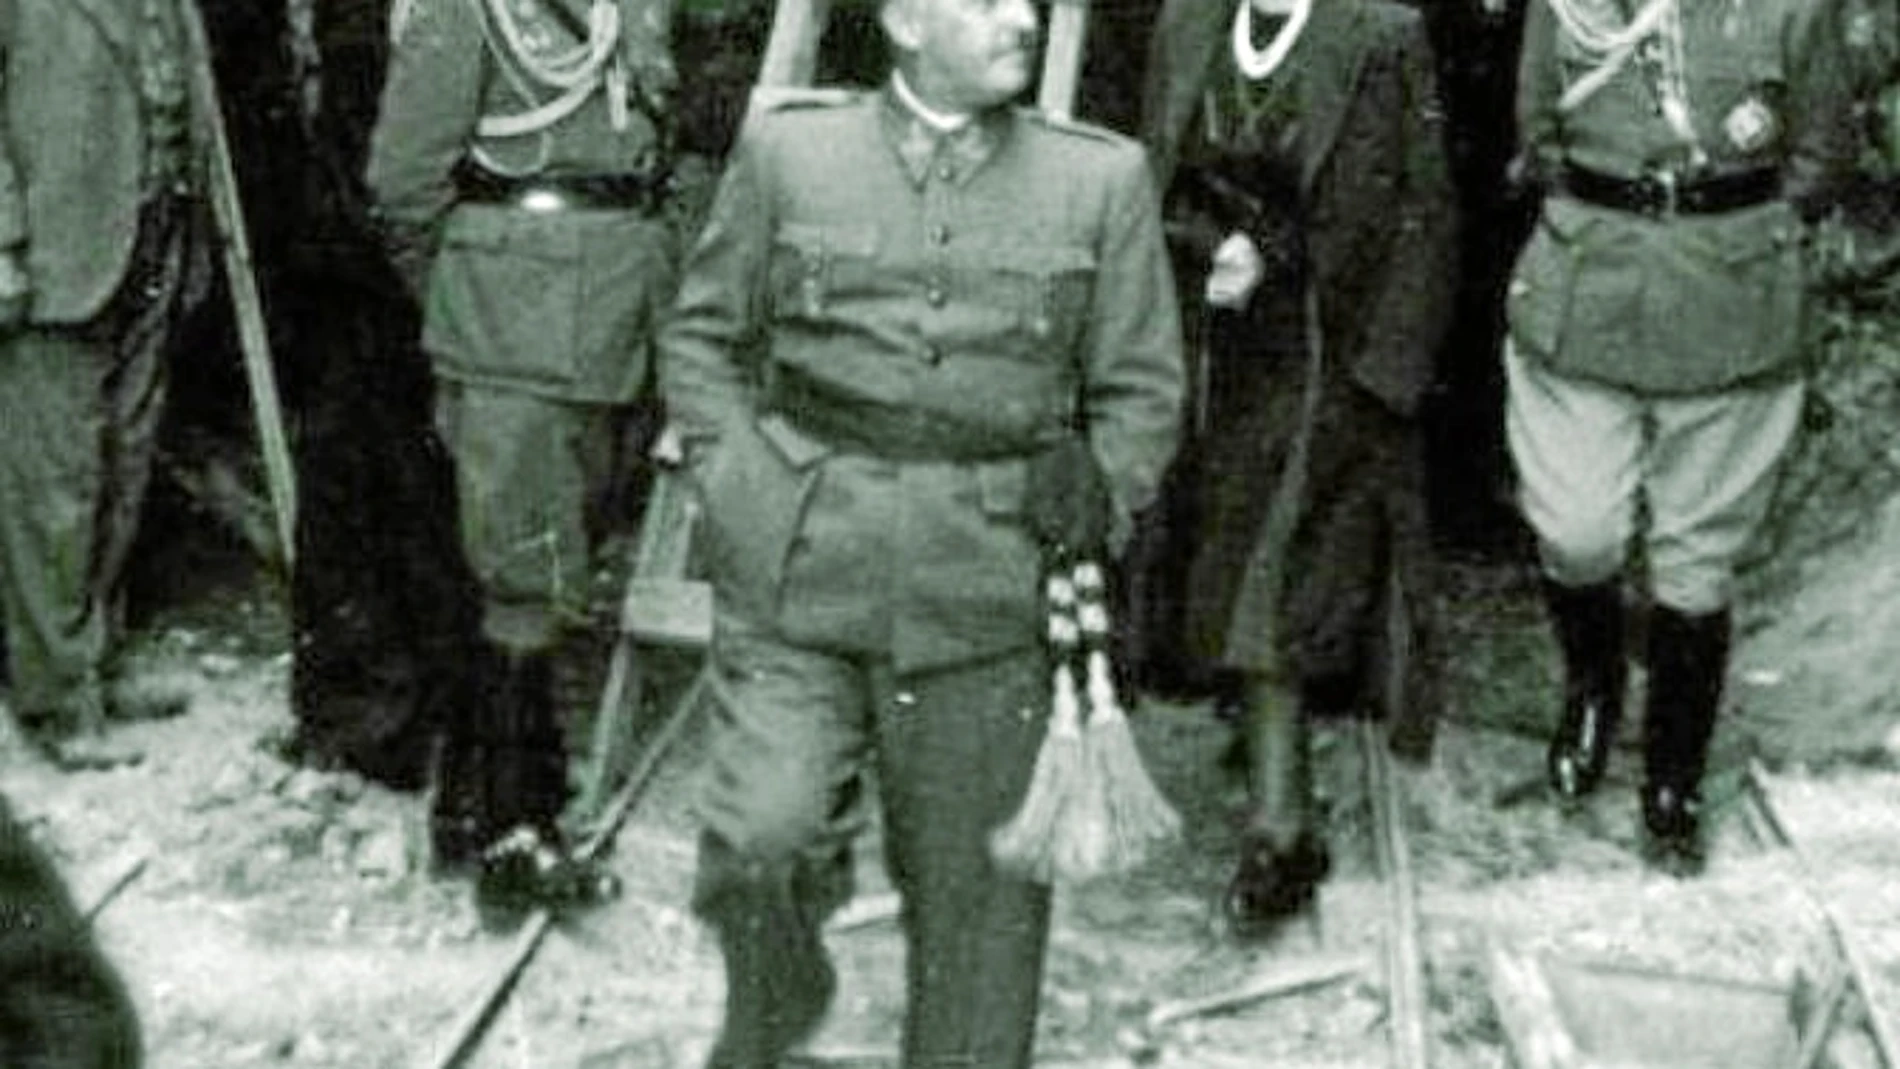 Franco visitando las obras del Valle de los Caídos